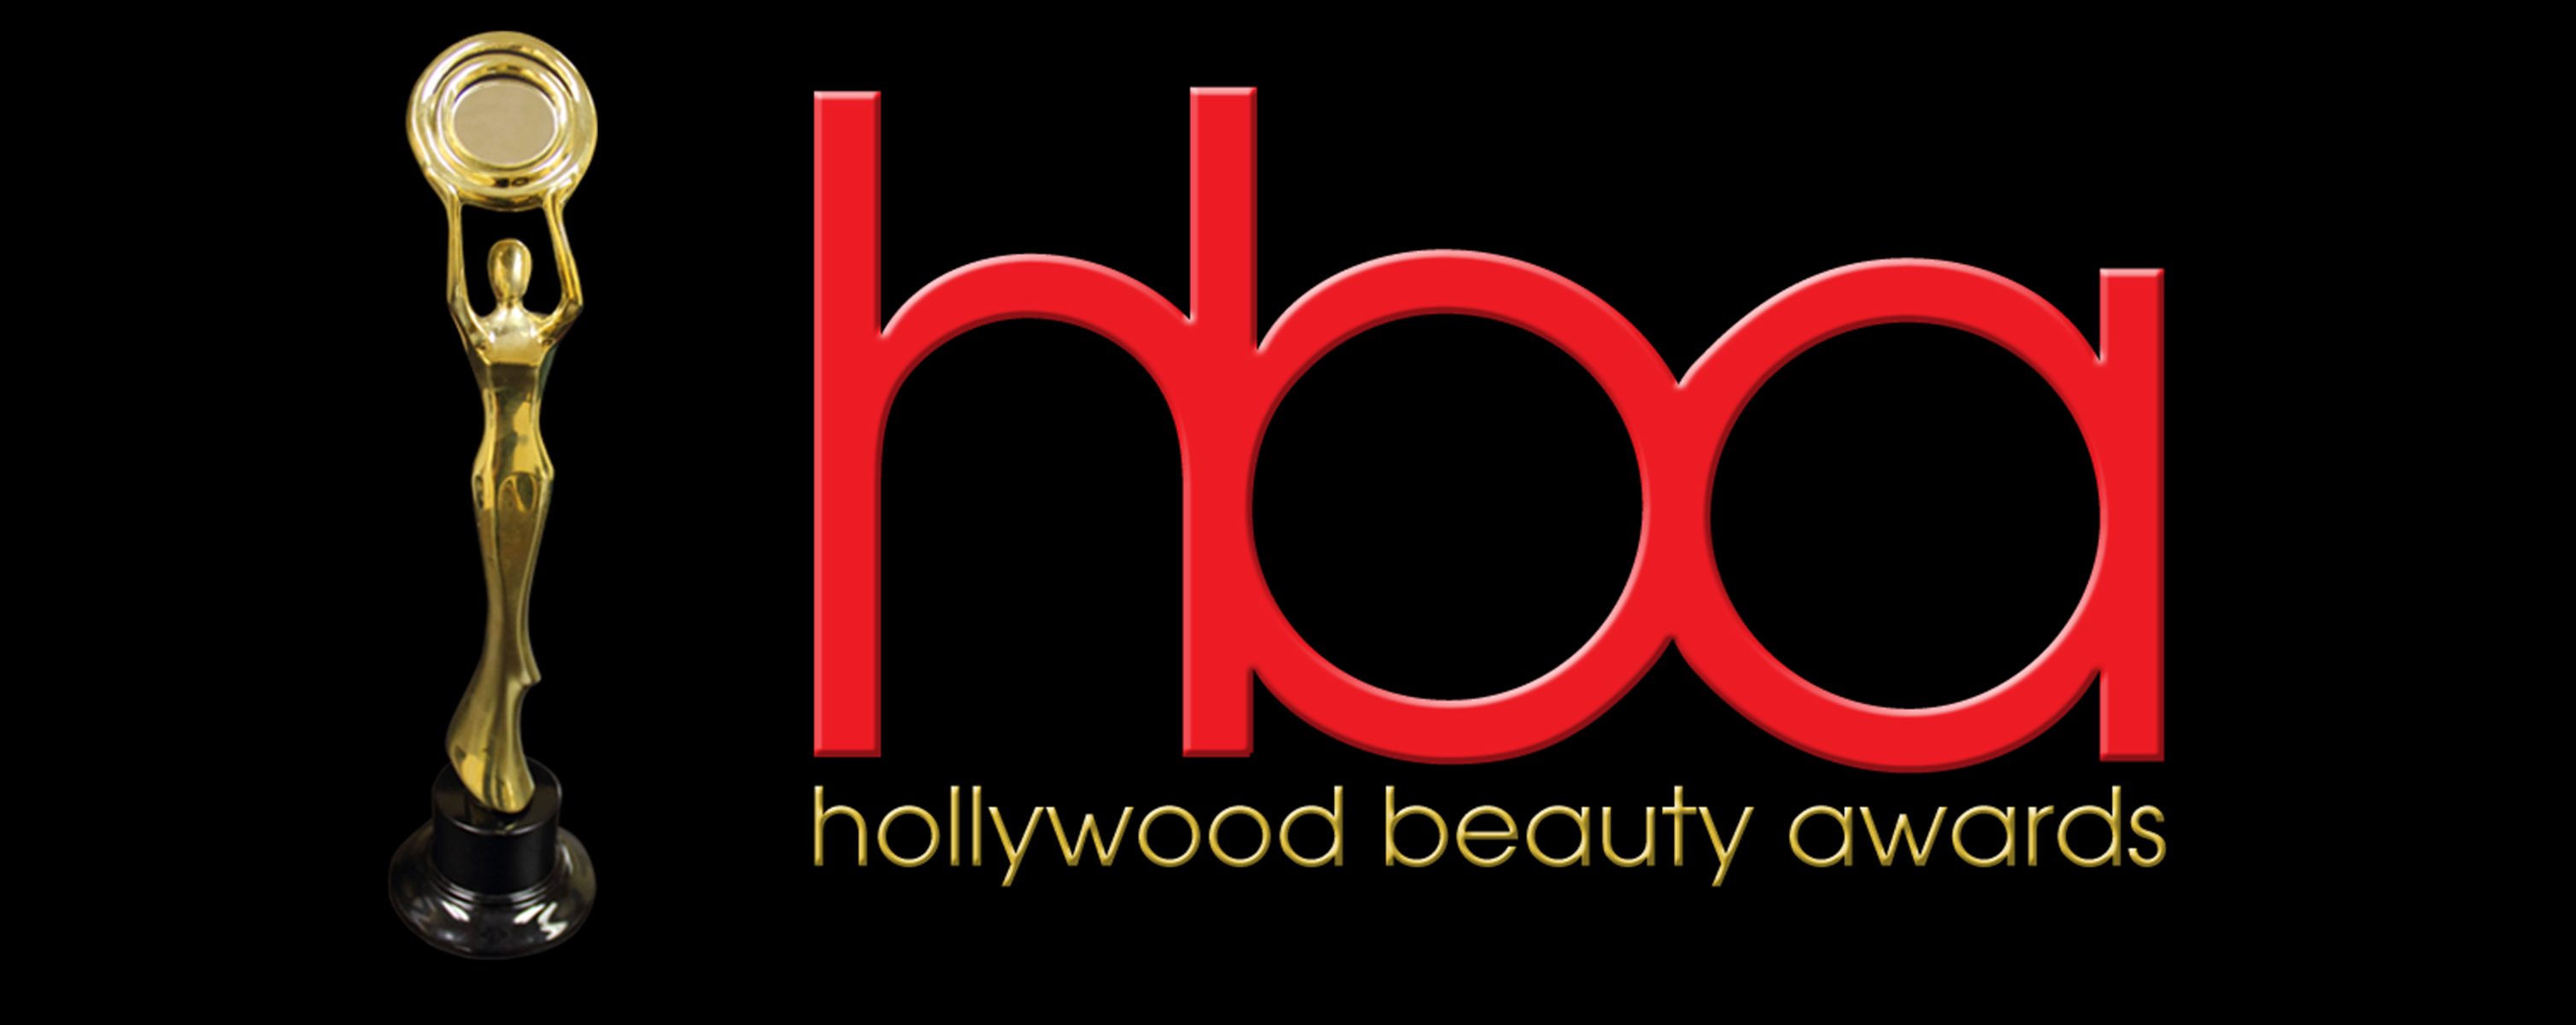 2nd Hollywood Beauty Awards - Johnny Depp, Jon Voight, Melanie Griffith